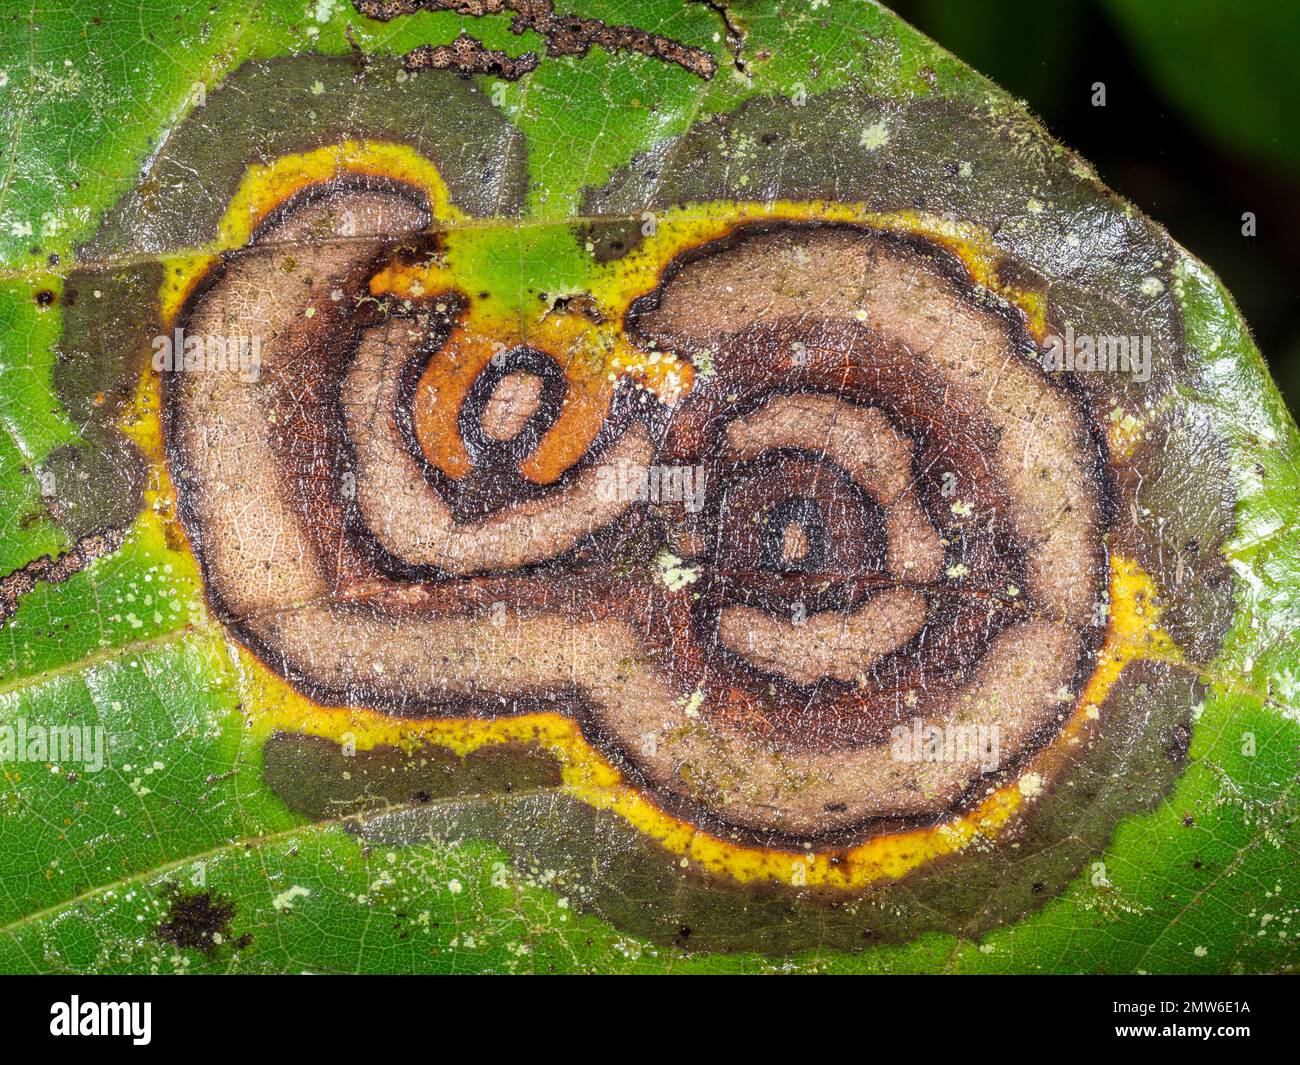 Feuille d'un arbuste de forêt tropicale infecté par une maladie fongique, province d'Orellana, Équateur Banque D'Images